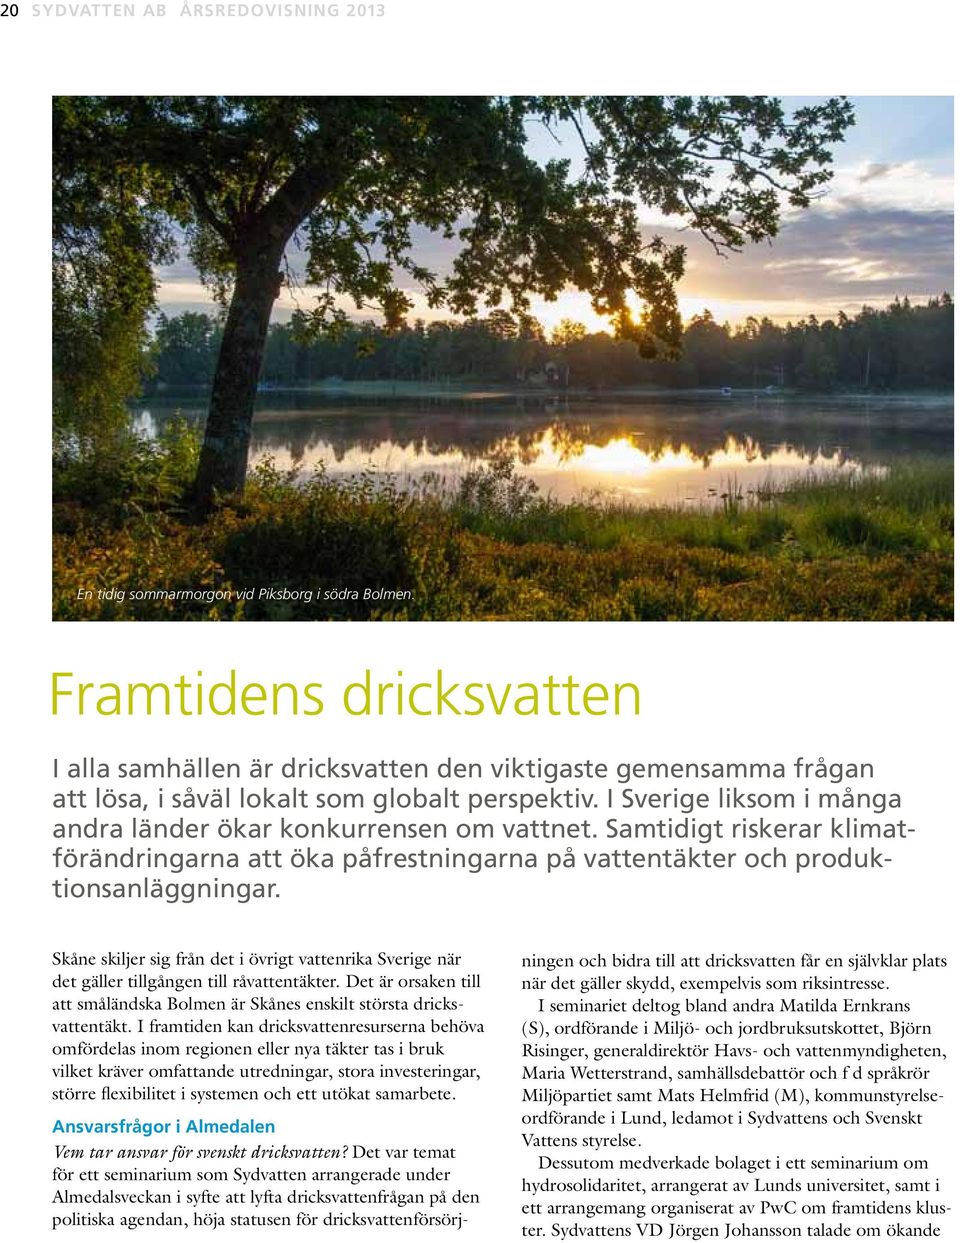 I Sverige liksom i många andra länder ökar konkurrensen om vattnet. Samtidigt riskerar klimatförändringarna att öka påfrestningarna på vattentäkter och produktionsanläggningar.